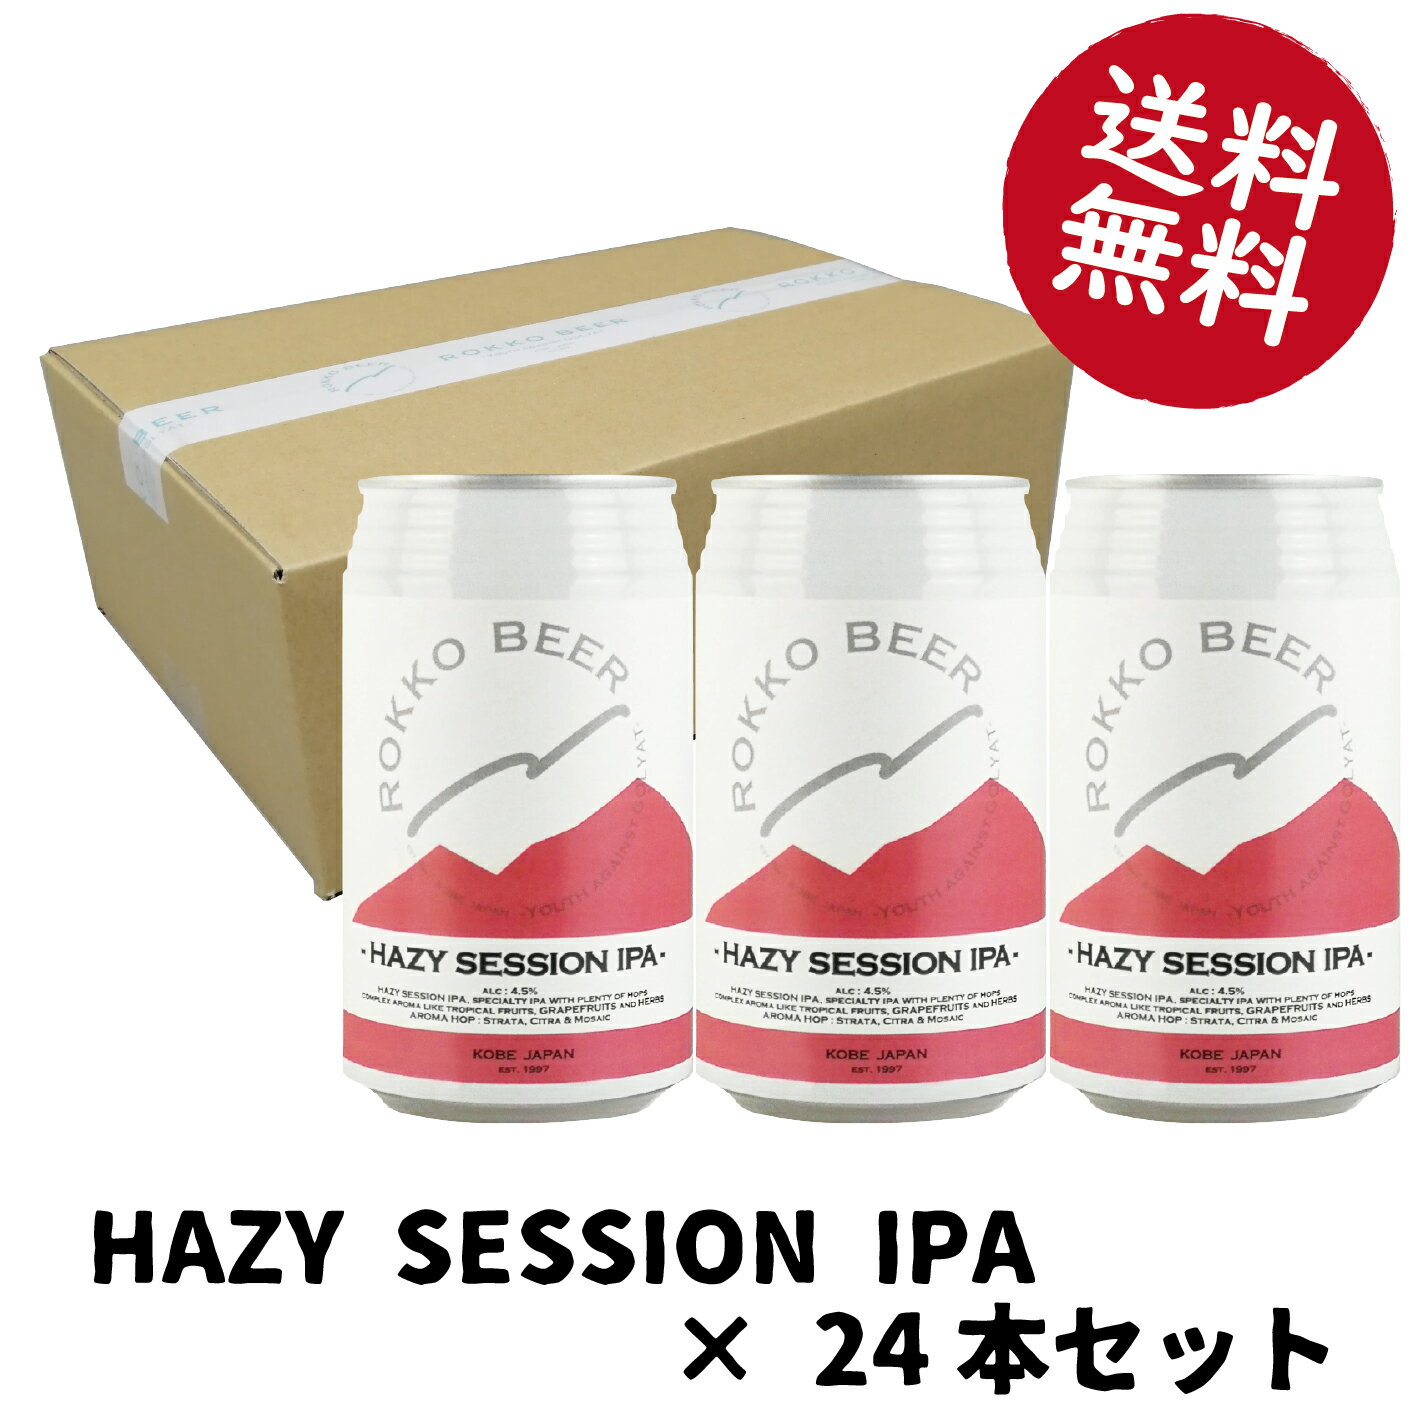 HAZY SESSION IPA24本セットクラフトビール 